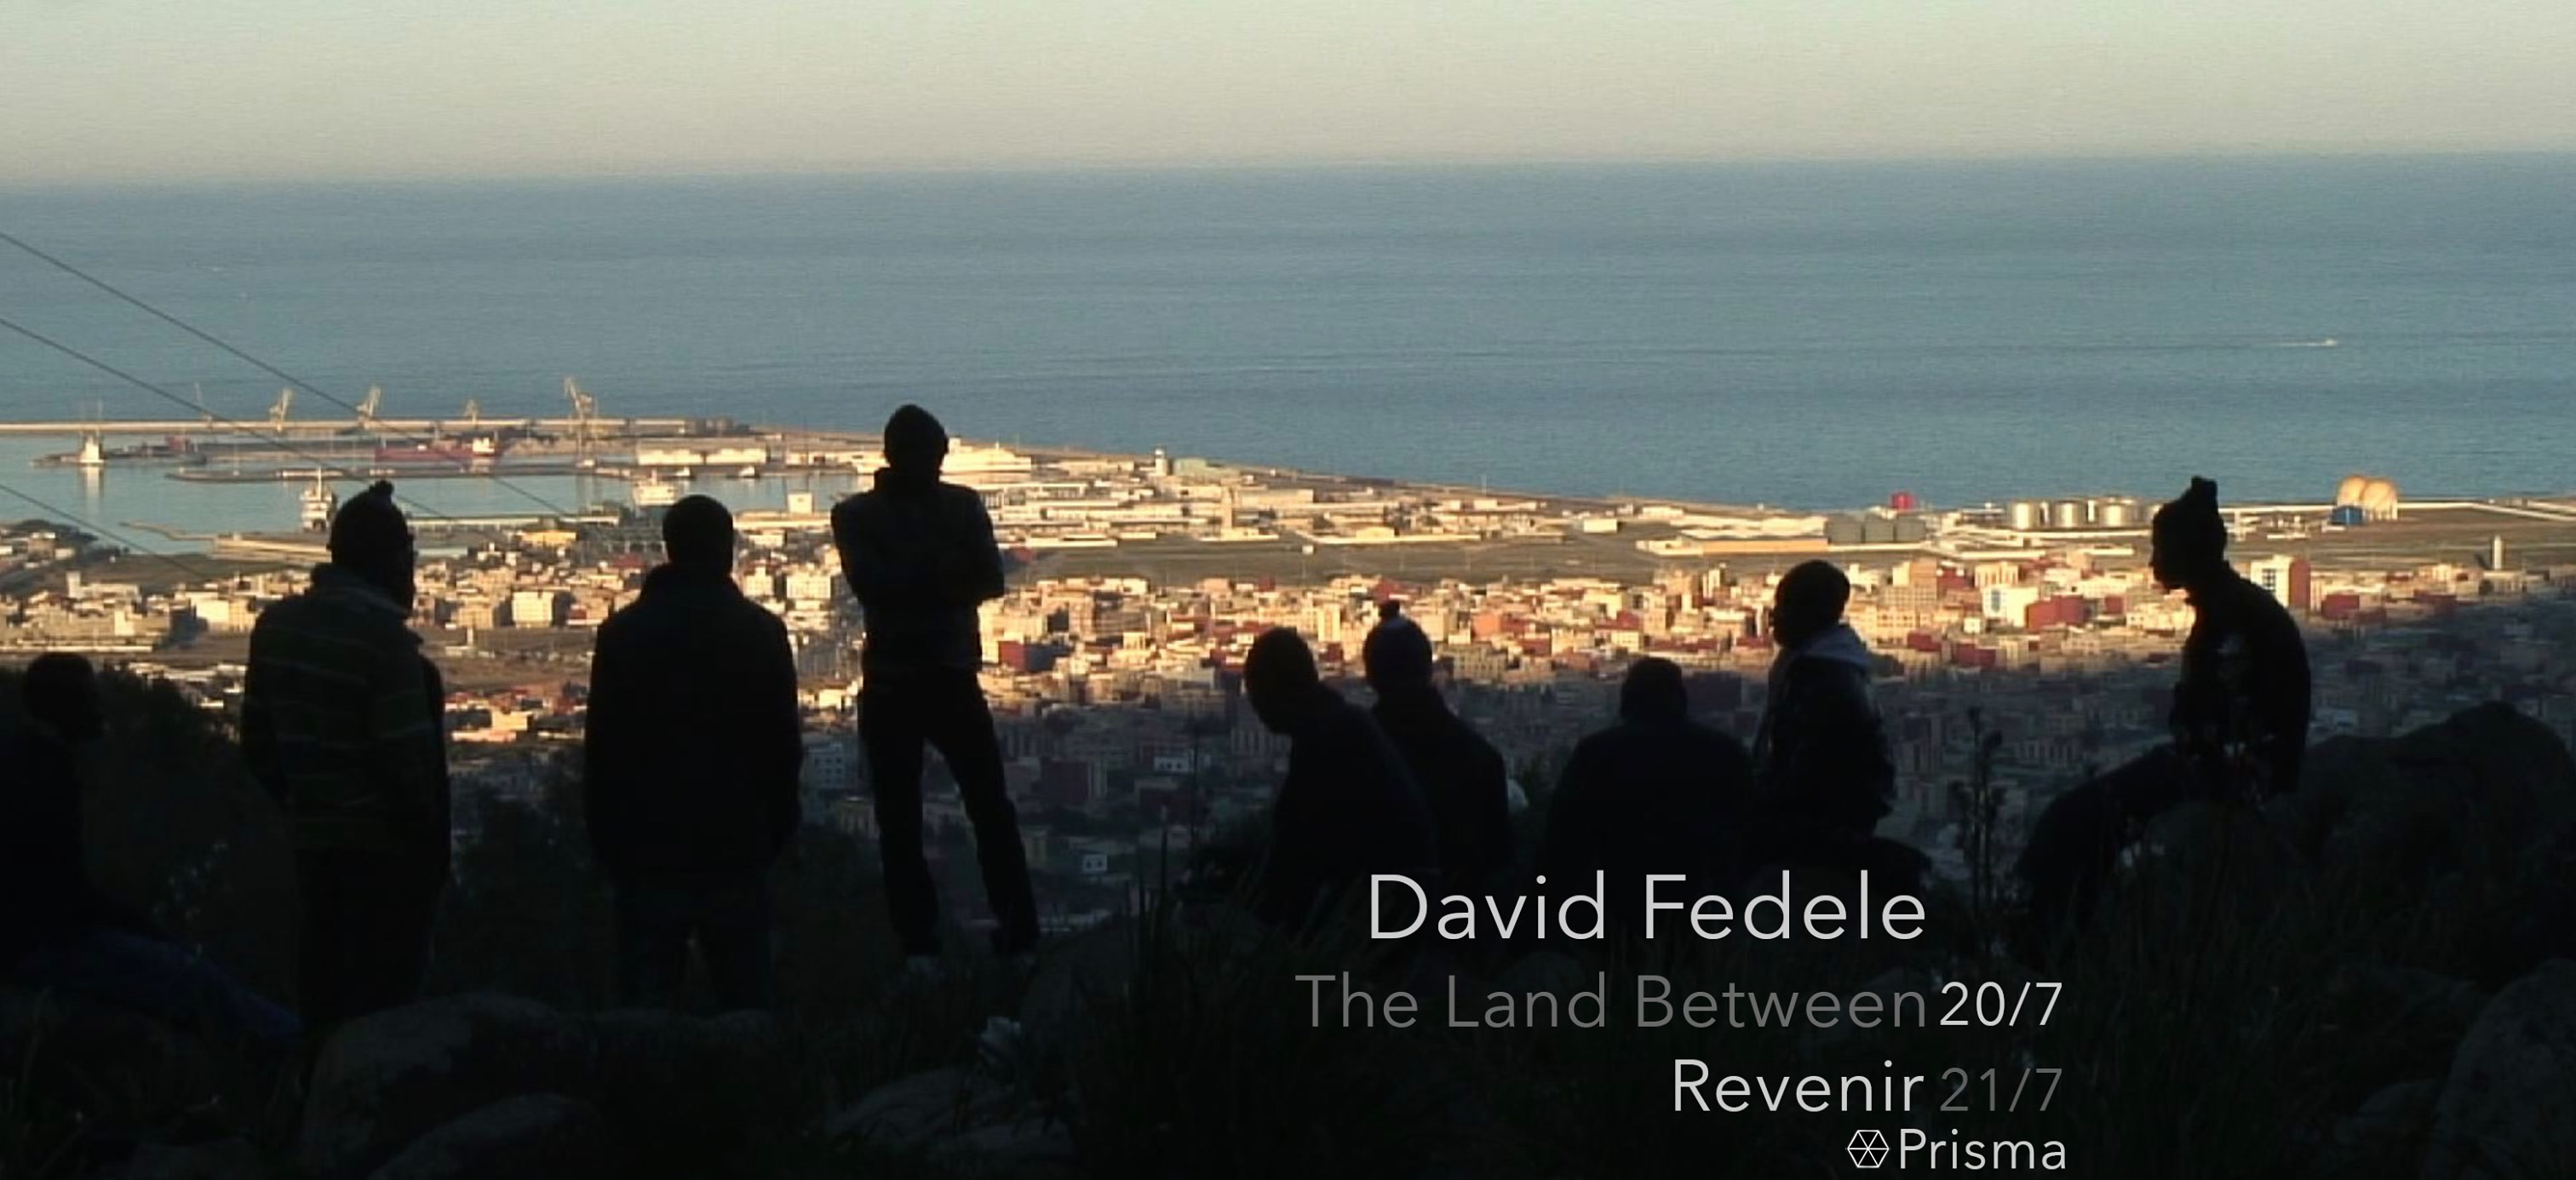 David Fedele, Documenting Migration - Revenir + The Land Between; Exibição de Filme Documentário